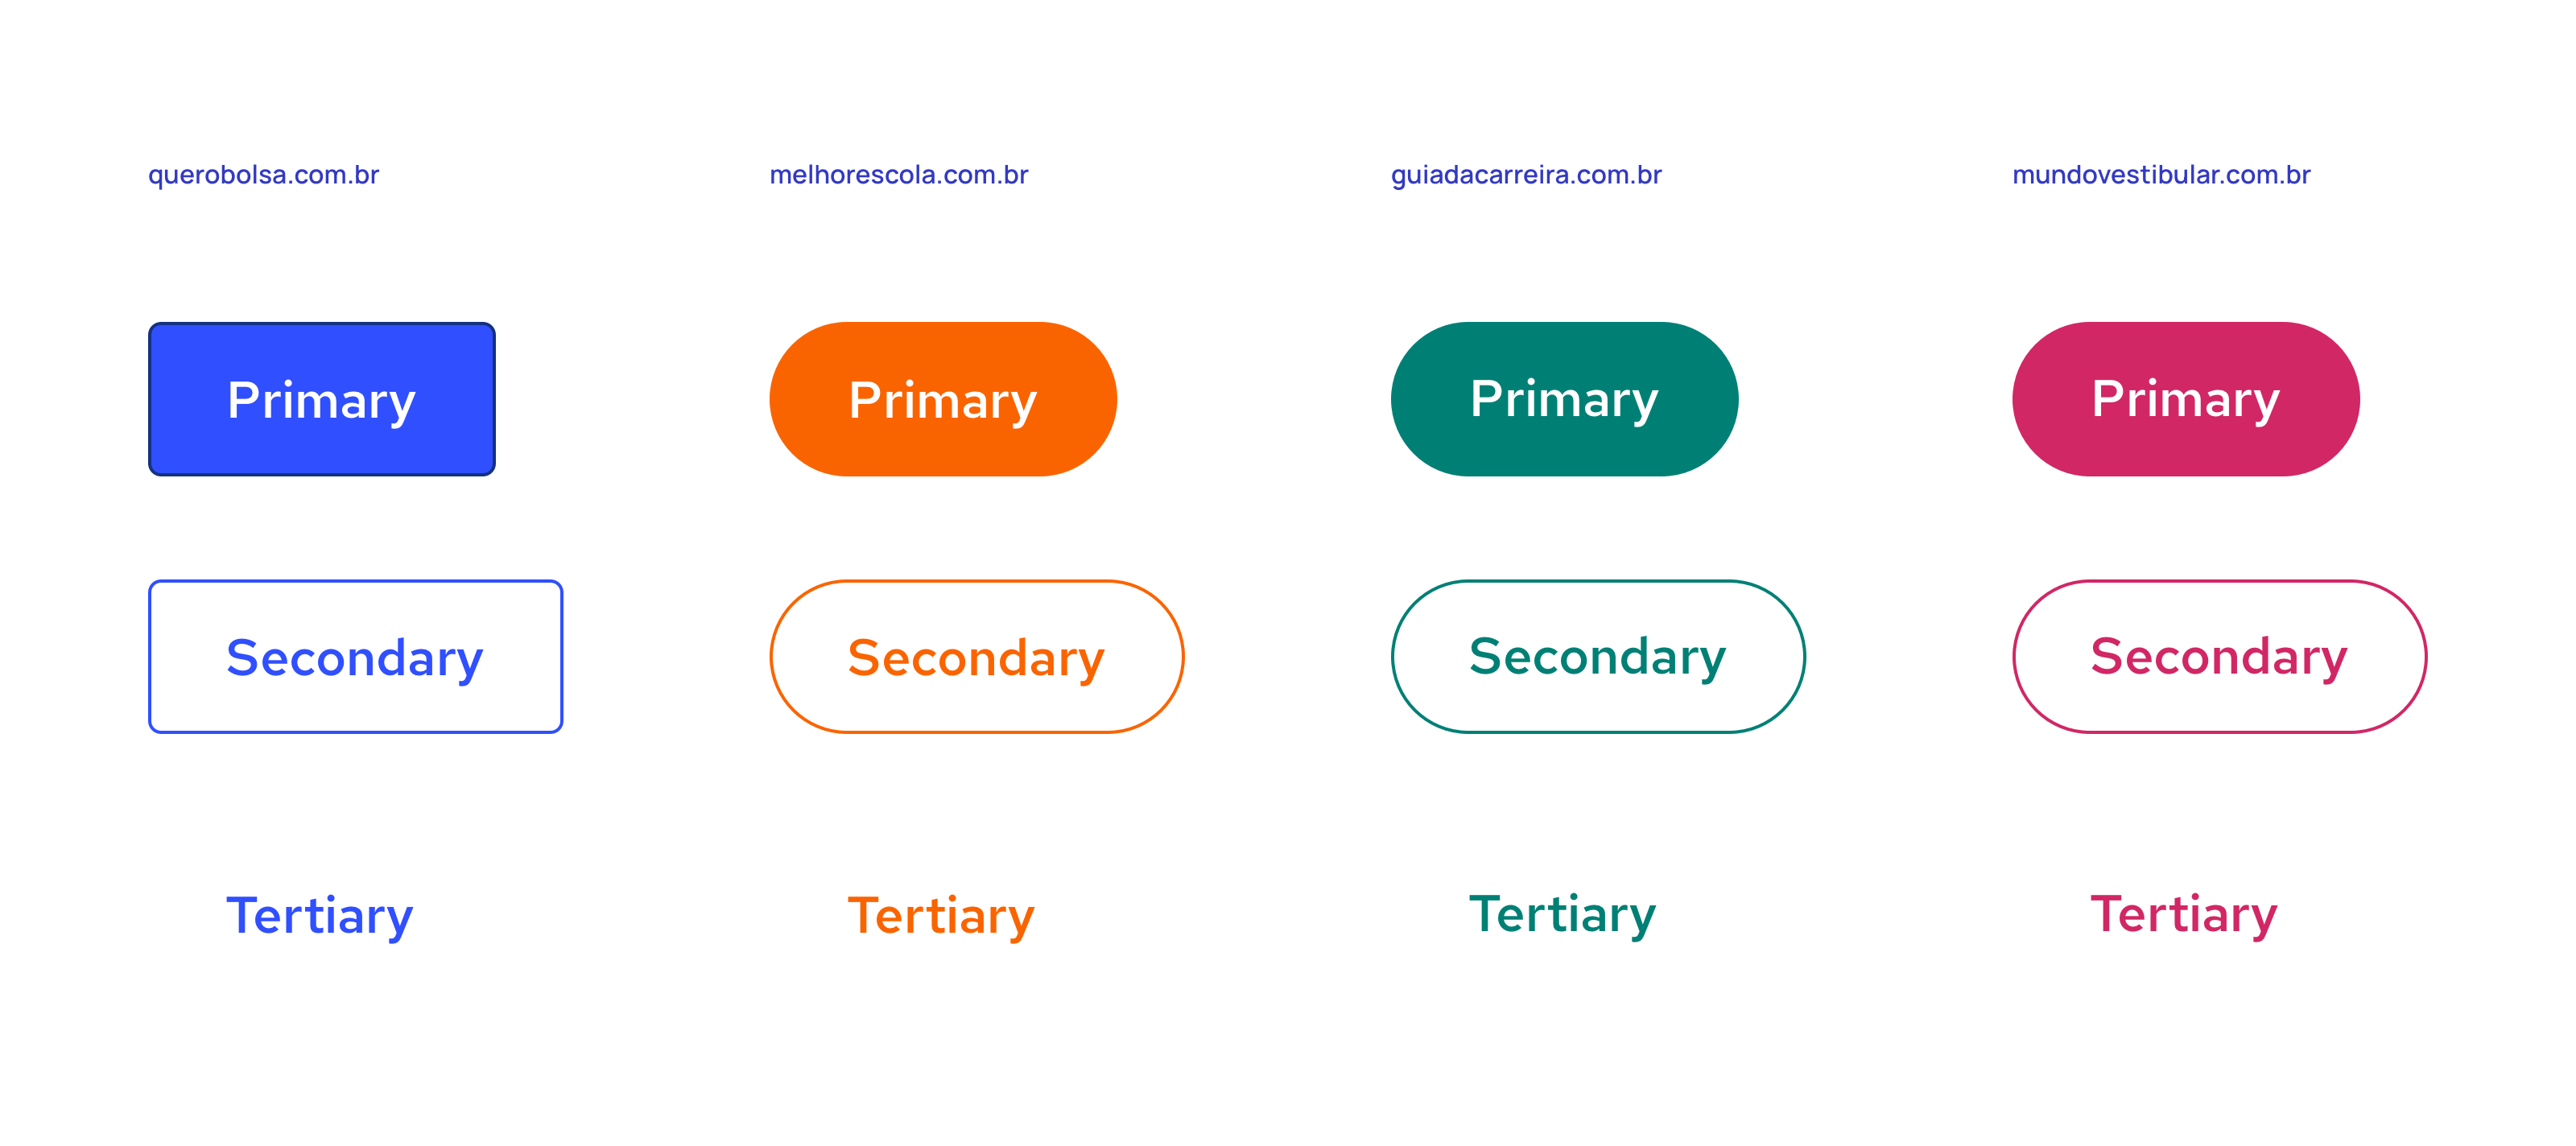 Exemplos de botões em diferentes temas para diferentes sites